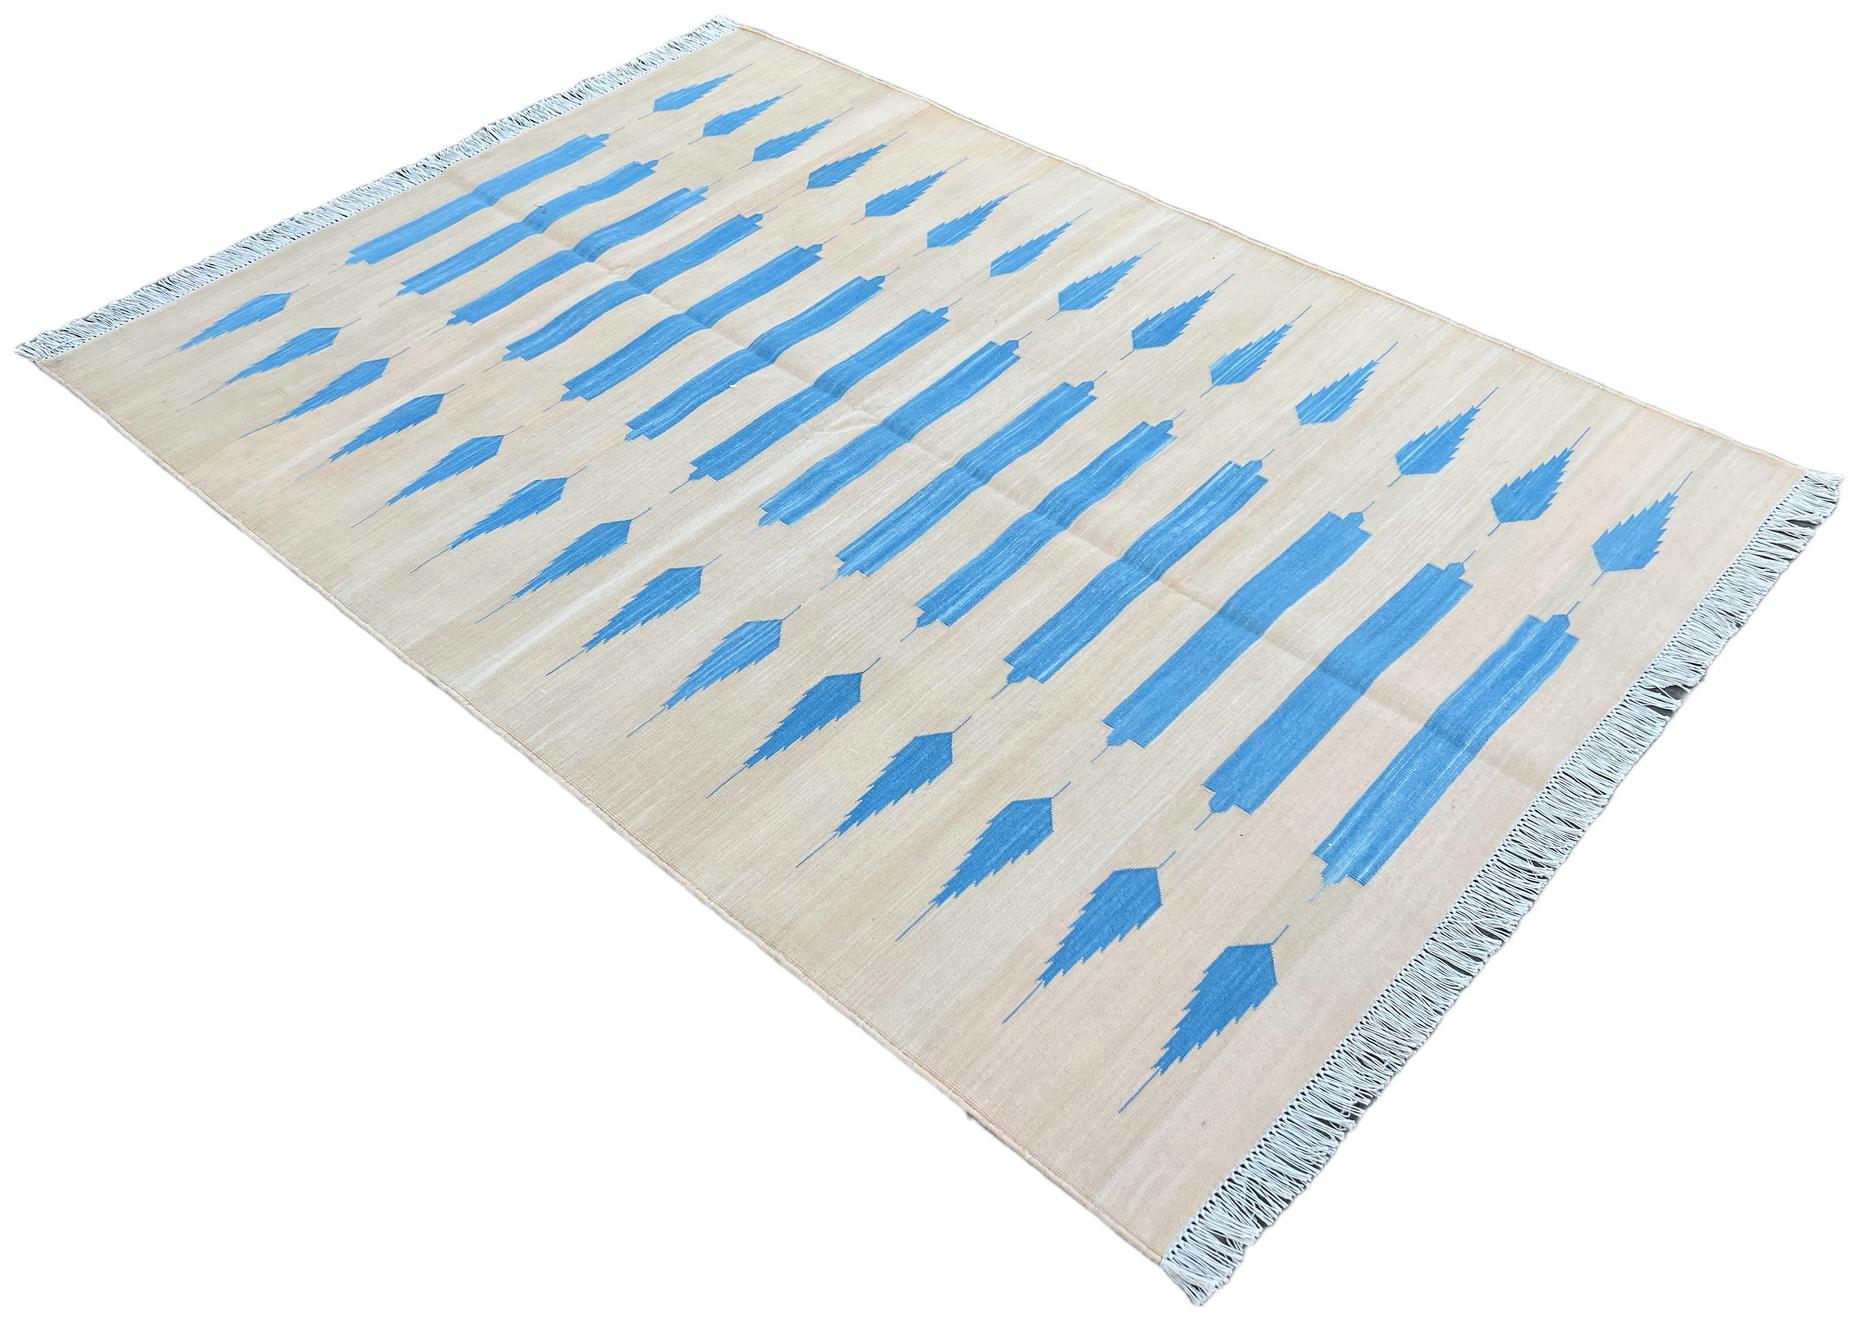 Baumwolle pflanzlich gefärbt Creme und blau gestreiften indischen Dhurrie Teppich-4'x6' 
Diese speziellen flachgewebten Dhurries werden aus 15-fachem Garn aus 100% Baumwolle handgewebt. Aufgrund der speziellen Fertigungstechniken, die zur